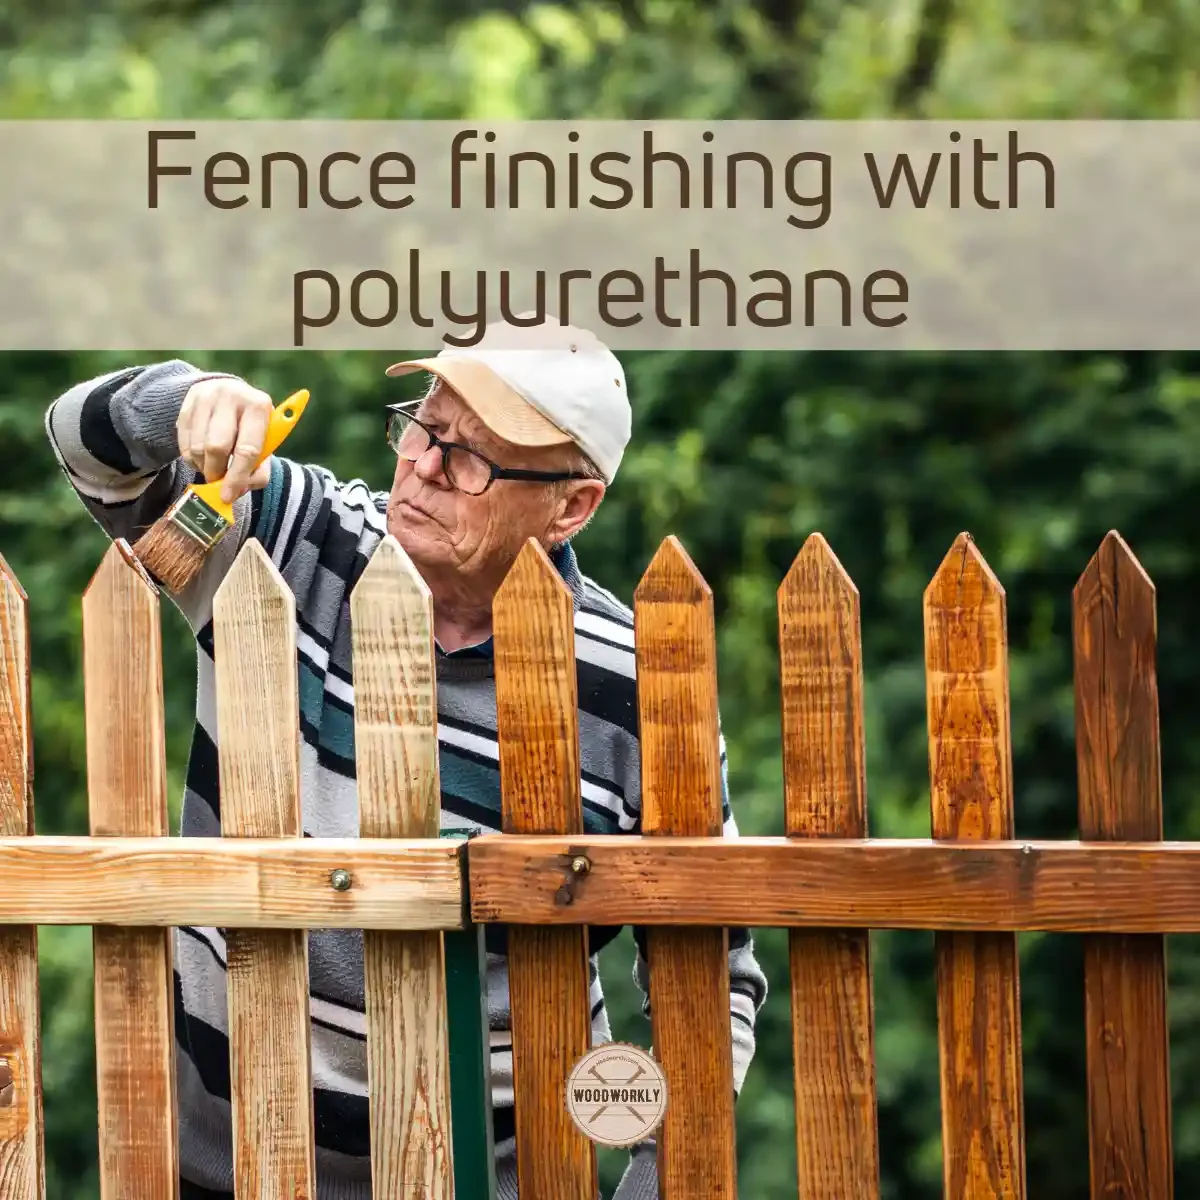 Fence finishing with polyurethane